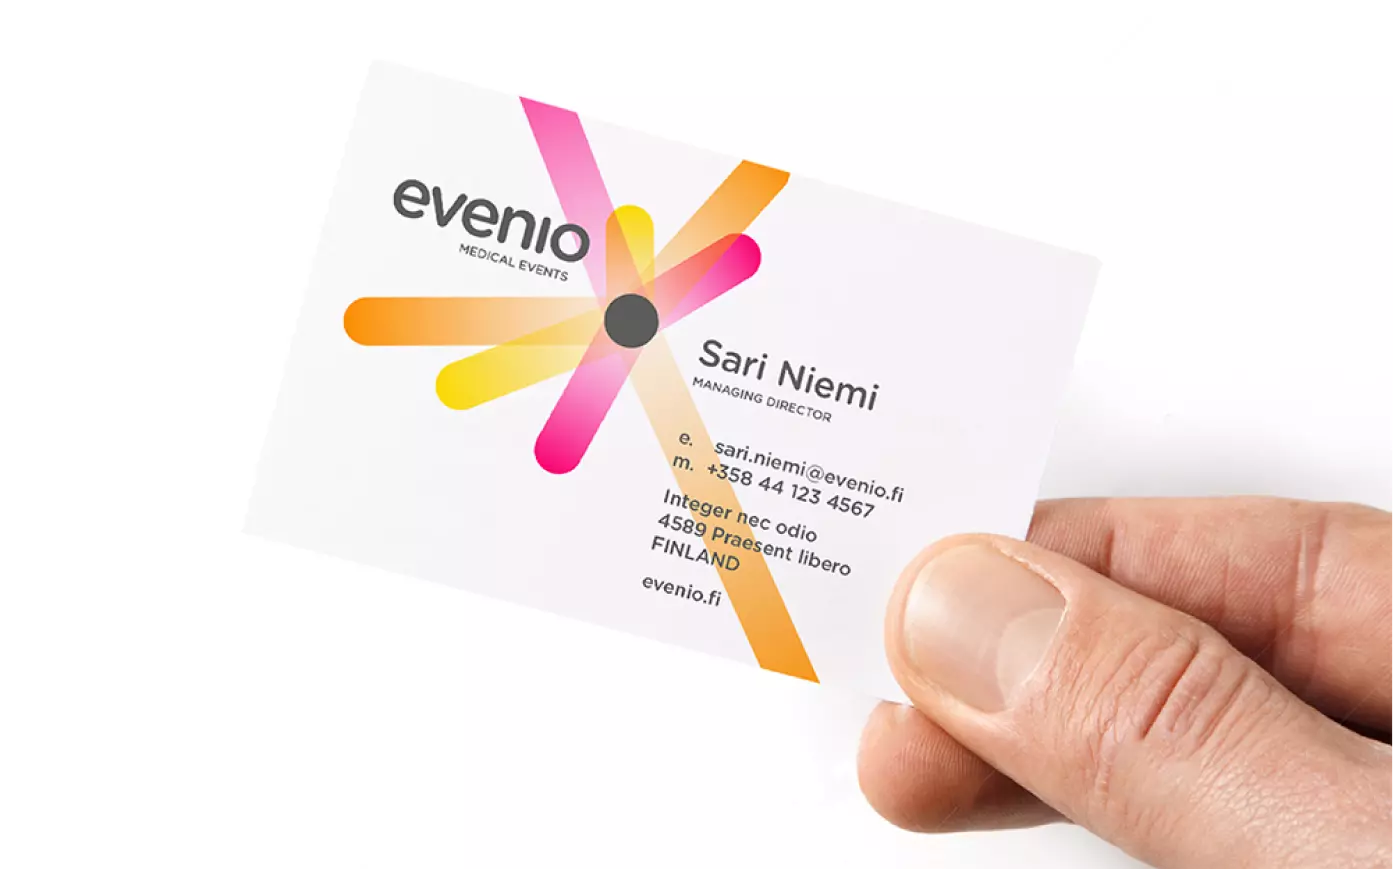 Evenio media design - image 1